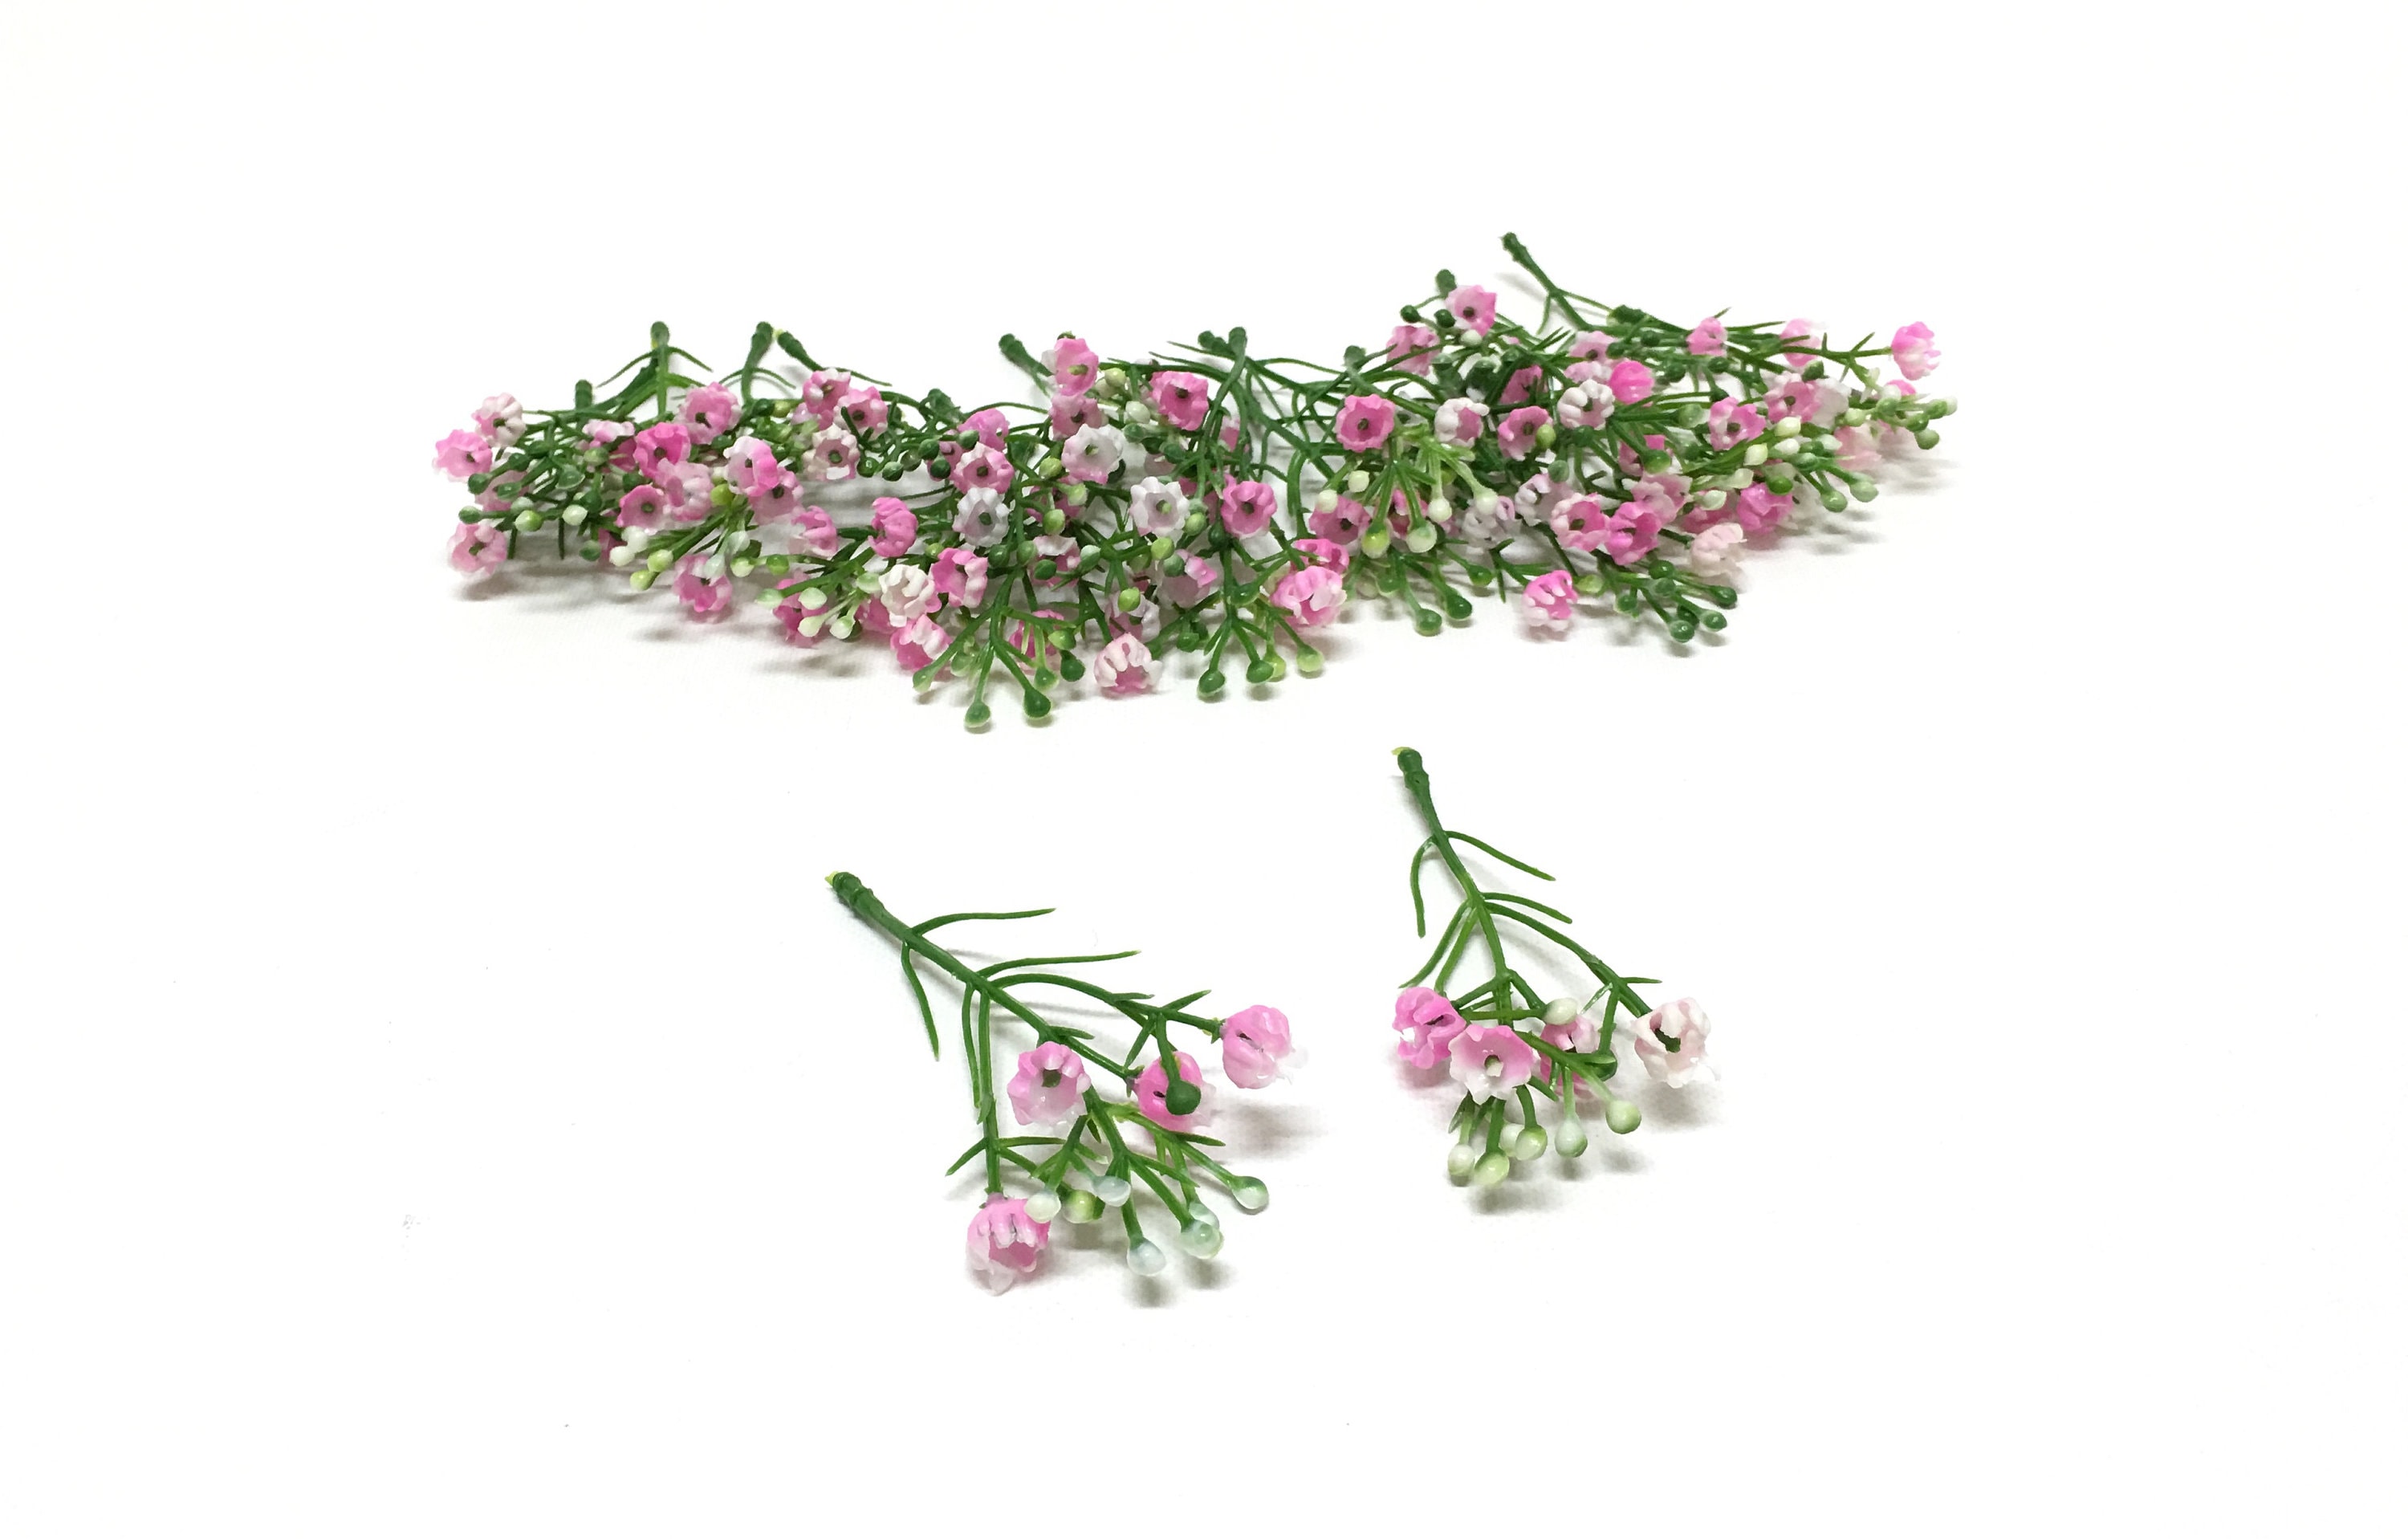 accesorios para la cabeza 4CM tela de flores rosas pequeñas Mini flores rosas de fieltro para el cabello alternativa 10 Uds. Color U 